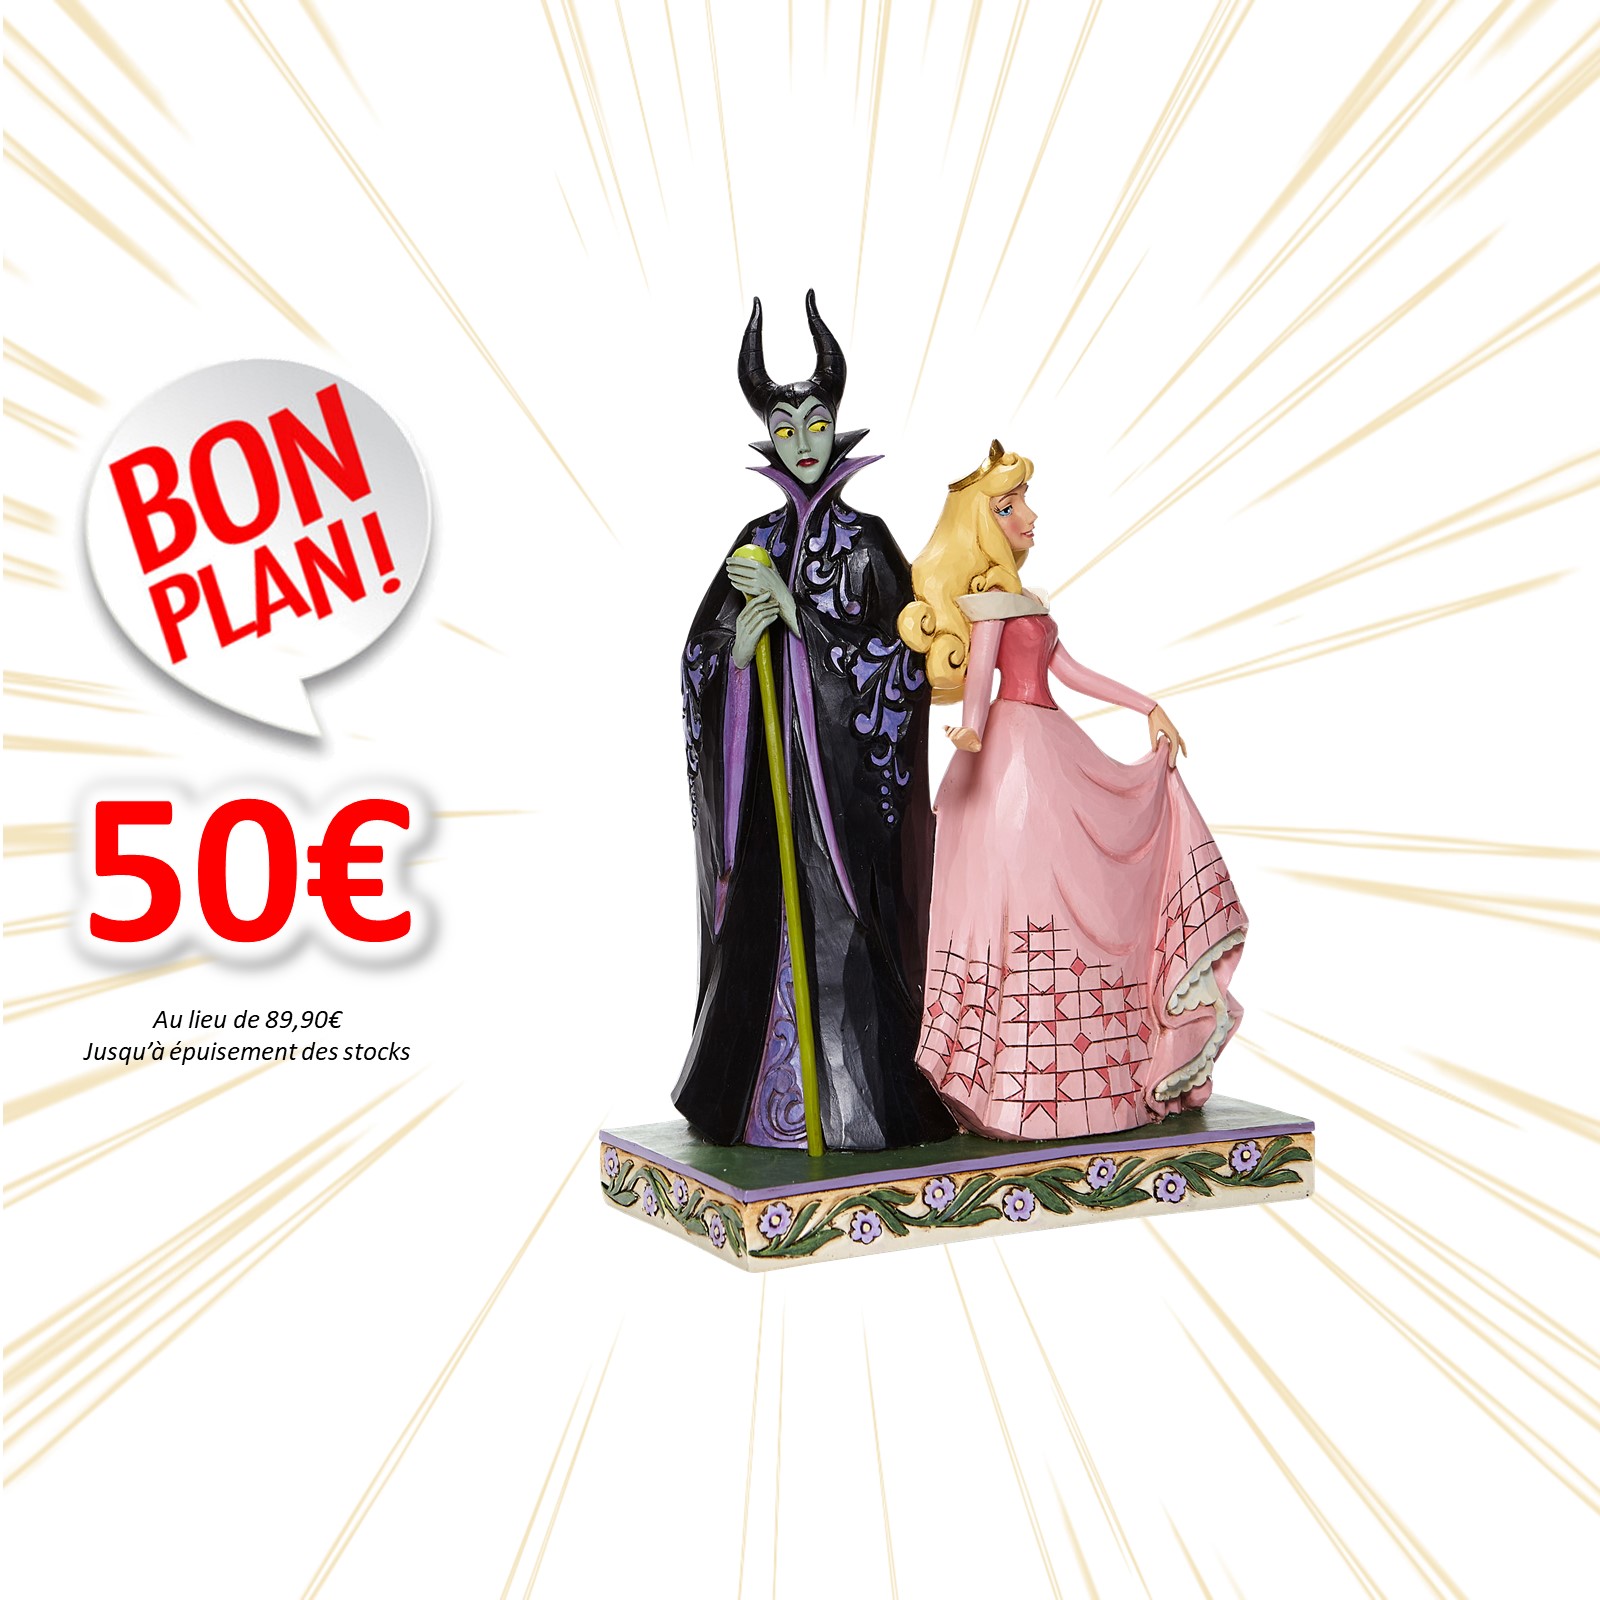 figurine Disney Traditions Aurore Malefique la belle au bois dormant 20cm Goodin shop BON PLAN